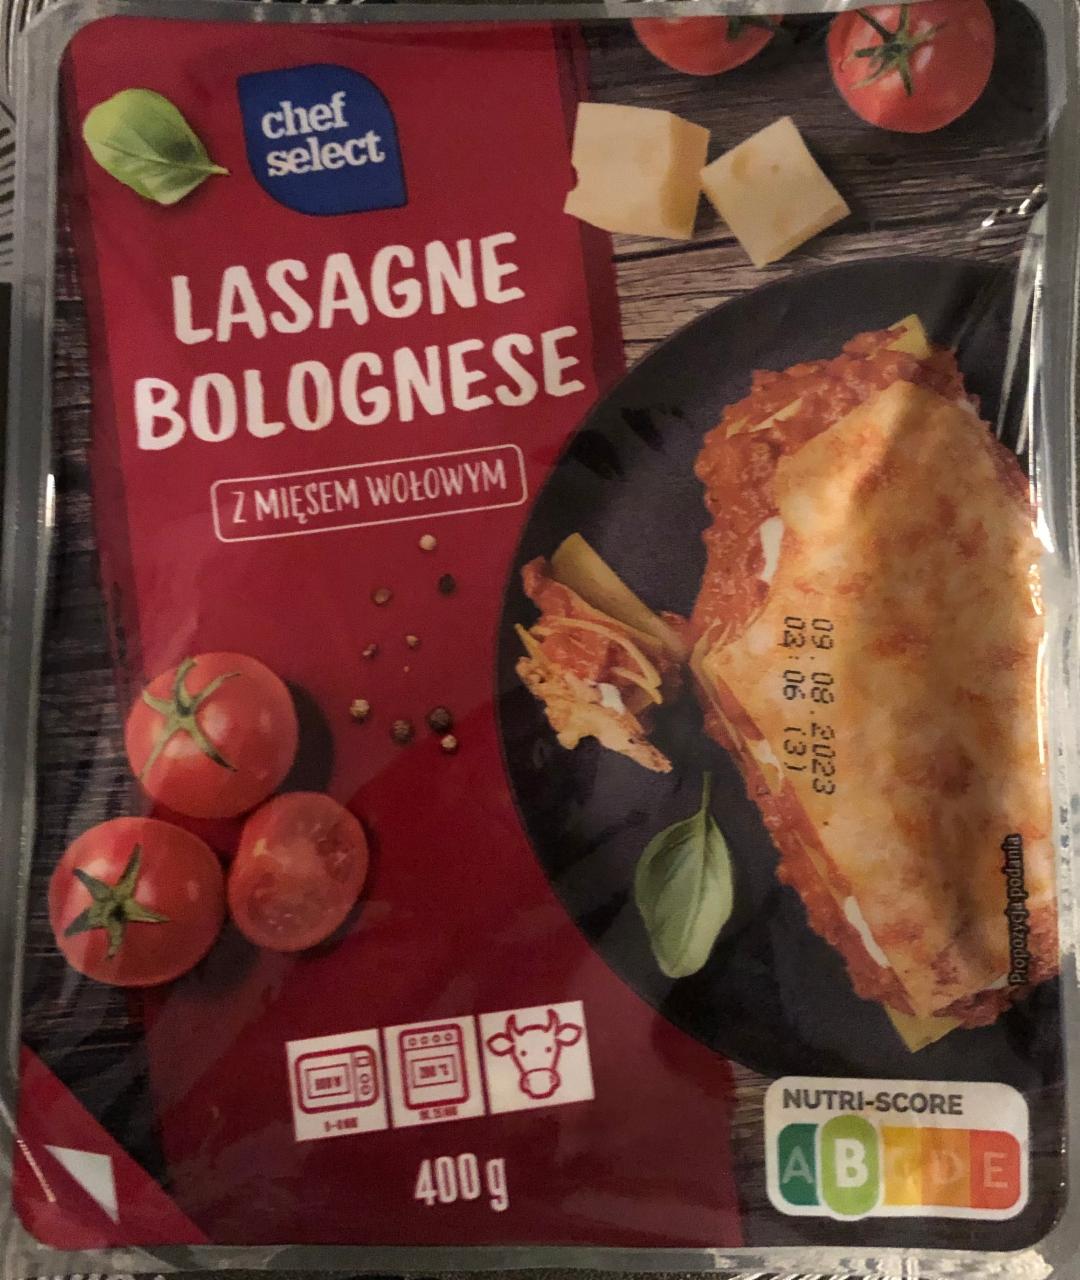 Zdjęcia - Lasagne bolognese z mięsem wołowym Chef Select